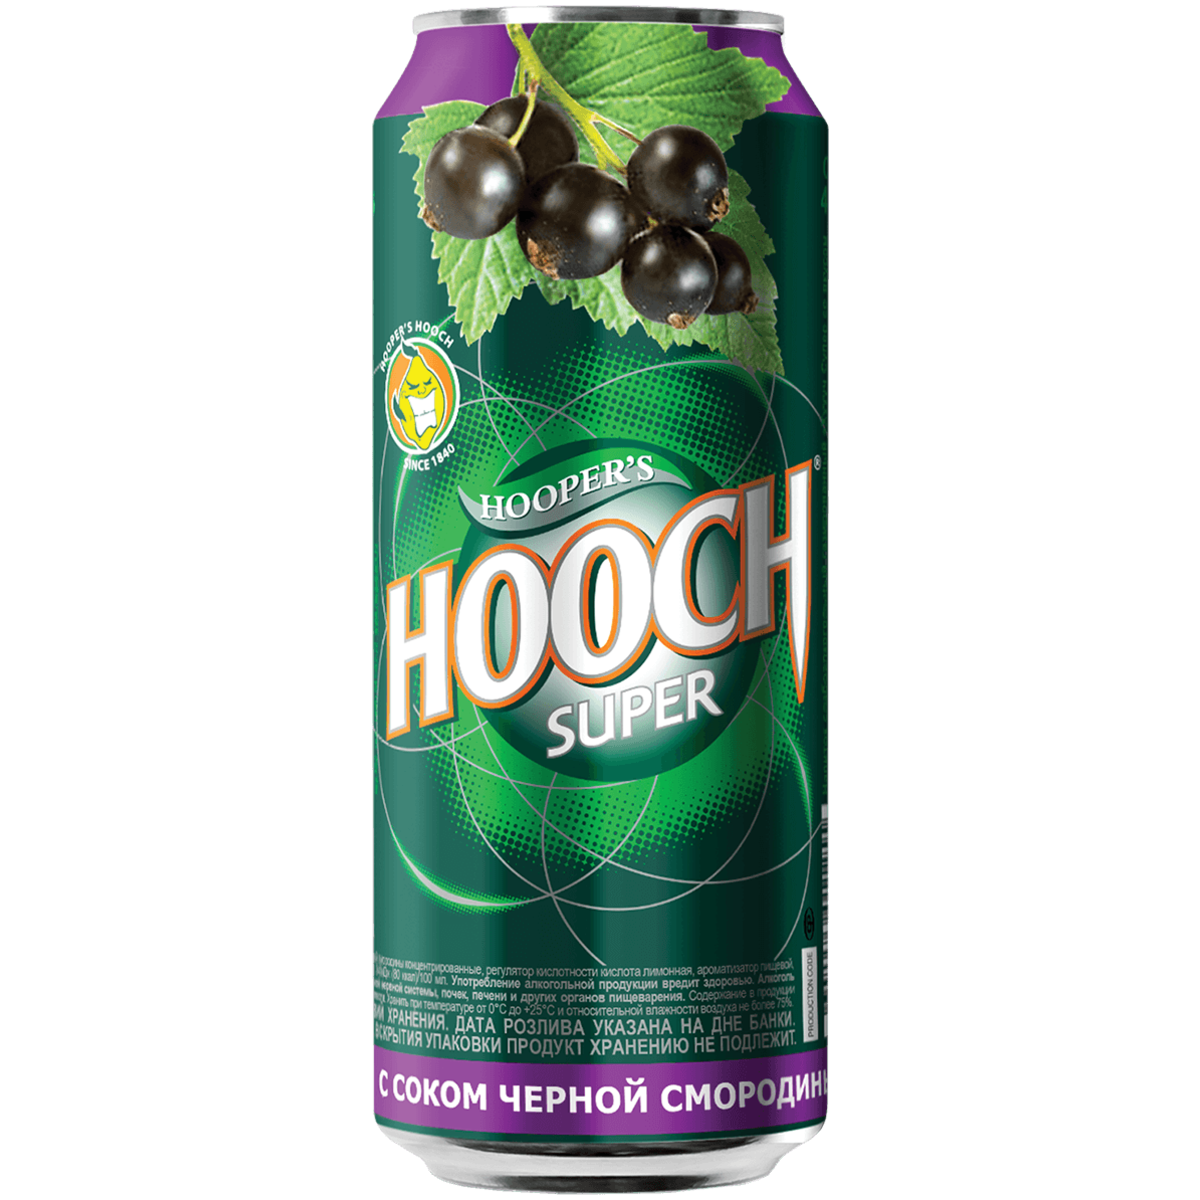 Пиво хуч. Hooch super со вкусом черной смородины. Hooch super напиток черная смородина. Напиток слабоалкогольный с соком черной смородины 7,2% (Hooch super), ж/б 450мл.. Напиток Hooch супер 0.45 жб.